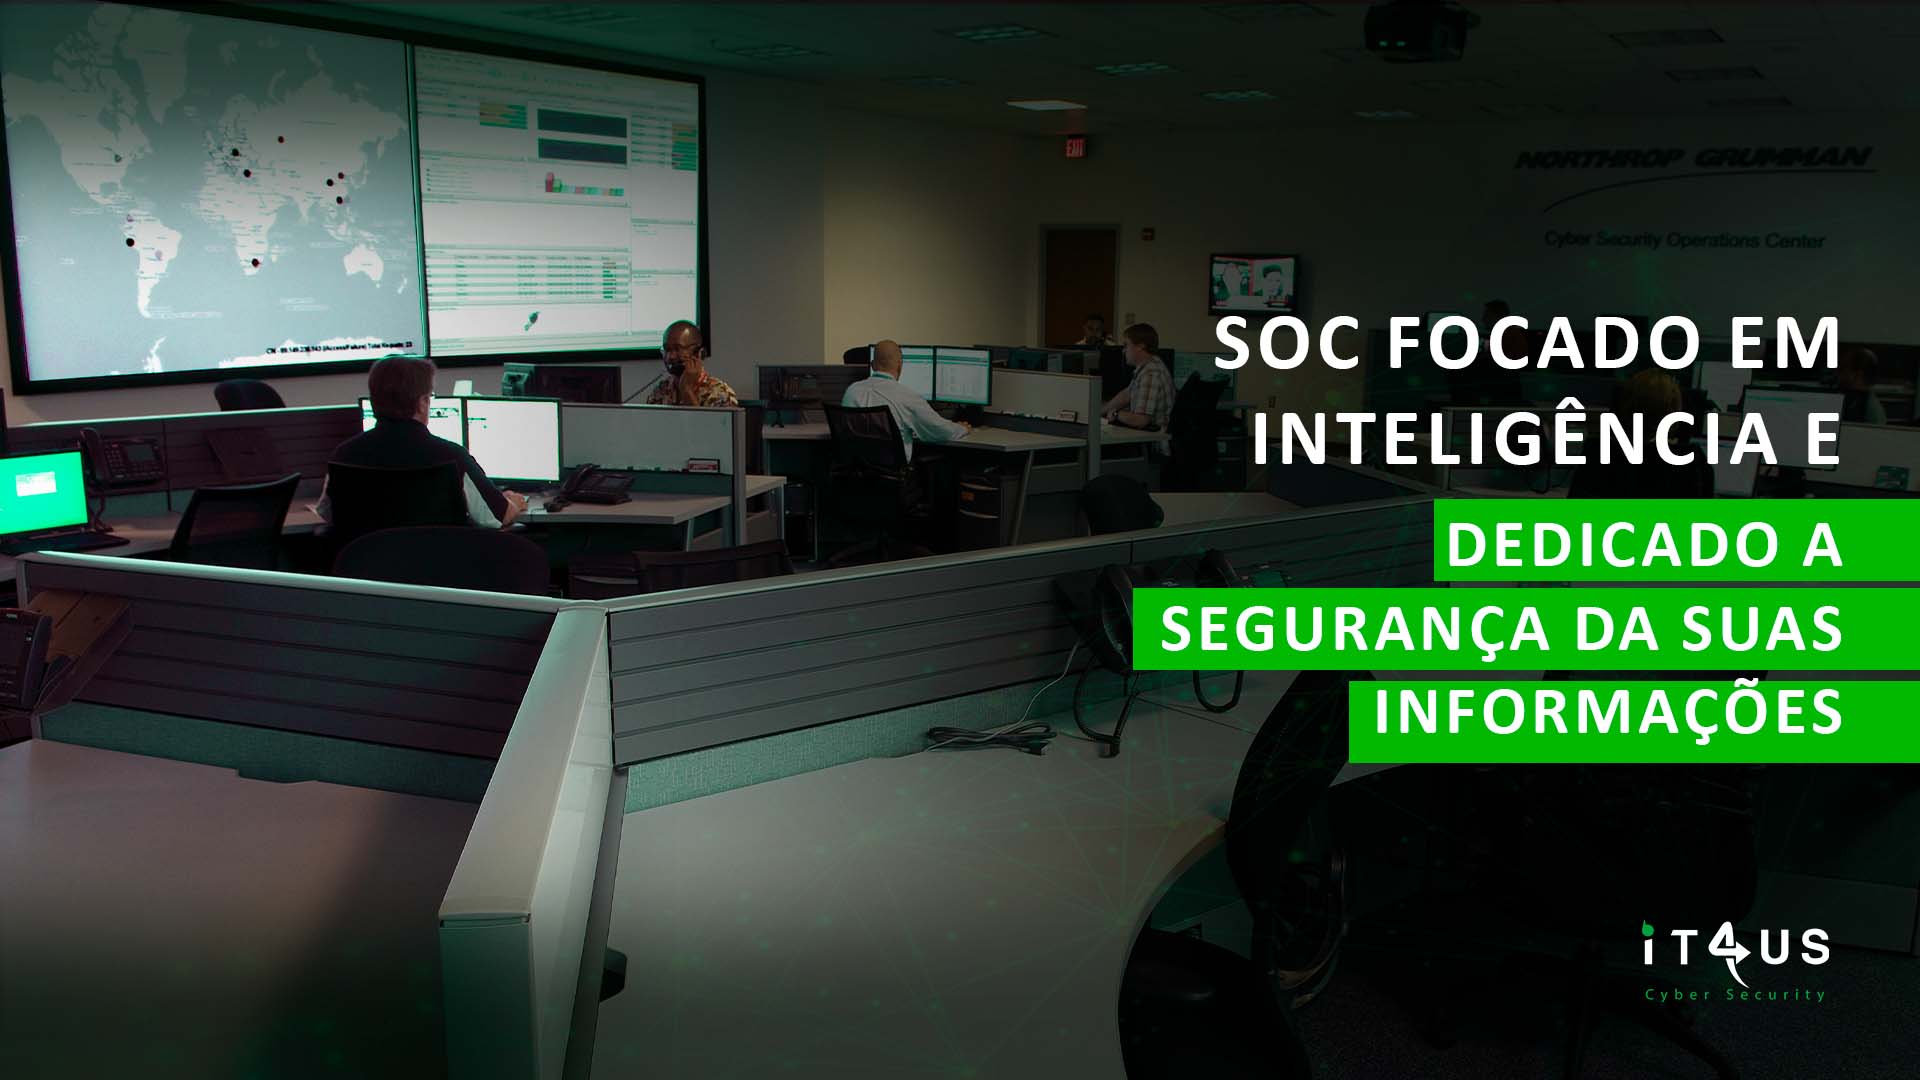 SOC focado em inteligência e dedicado a segurança da suas informações